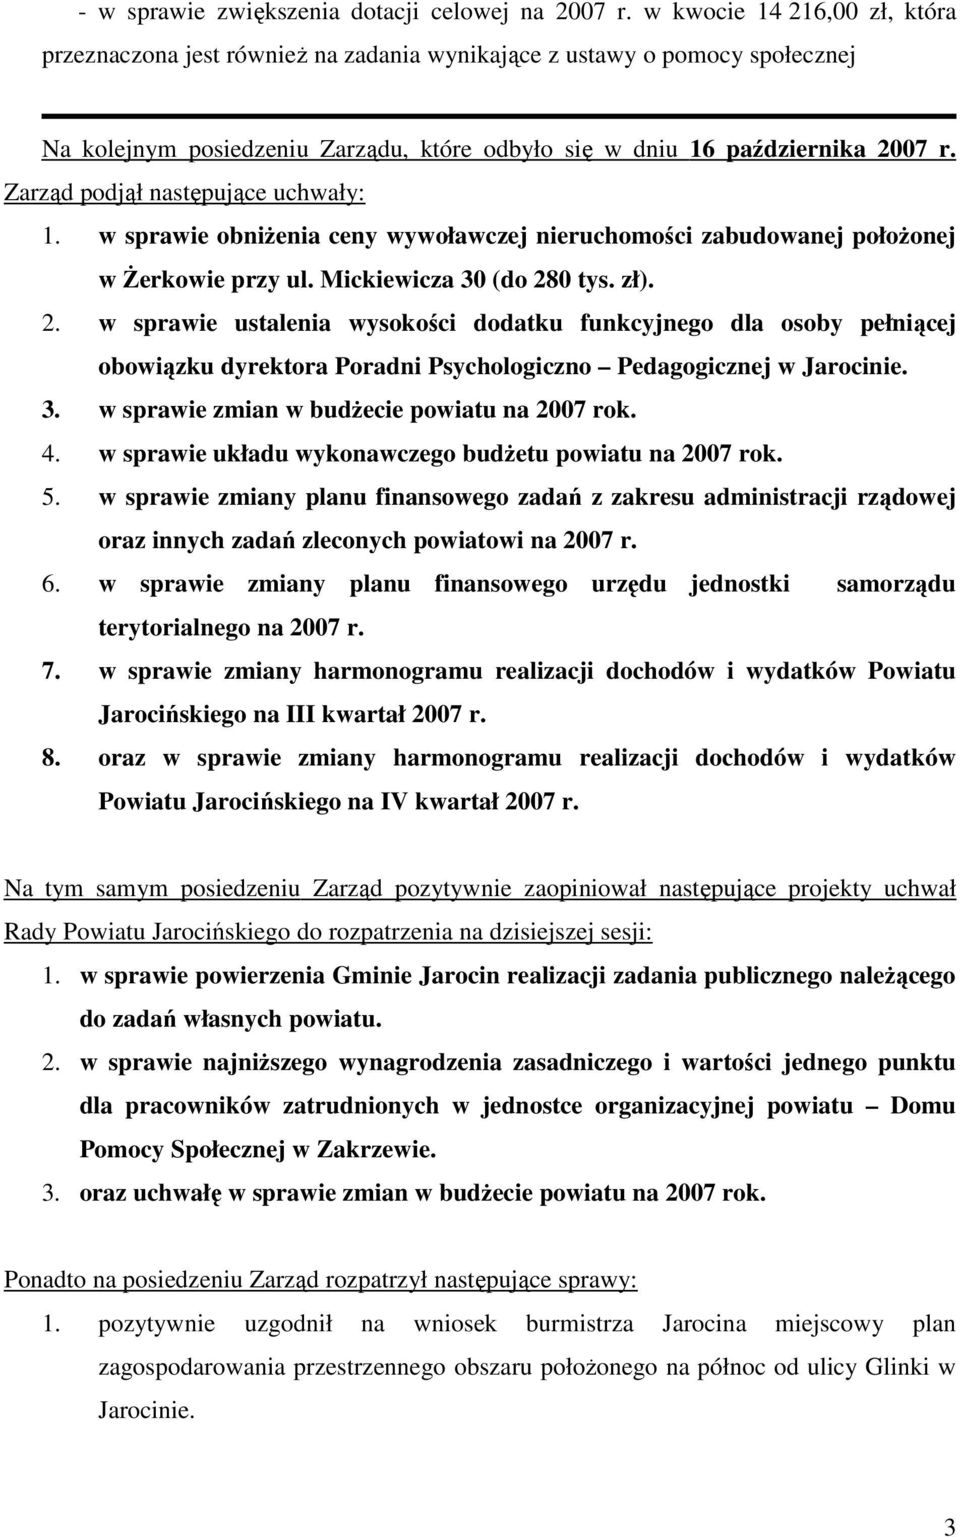 Zarząd podjął następujące uchwały: 1. w sprawie obniŝenia ceny wywoławczej nieruchomości zabudowanej połoŝonej w śerkowie przy ul. Mickiewicza 30 (do 28